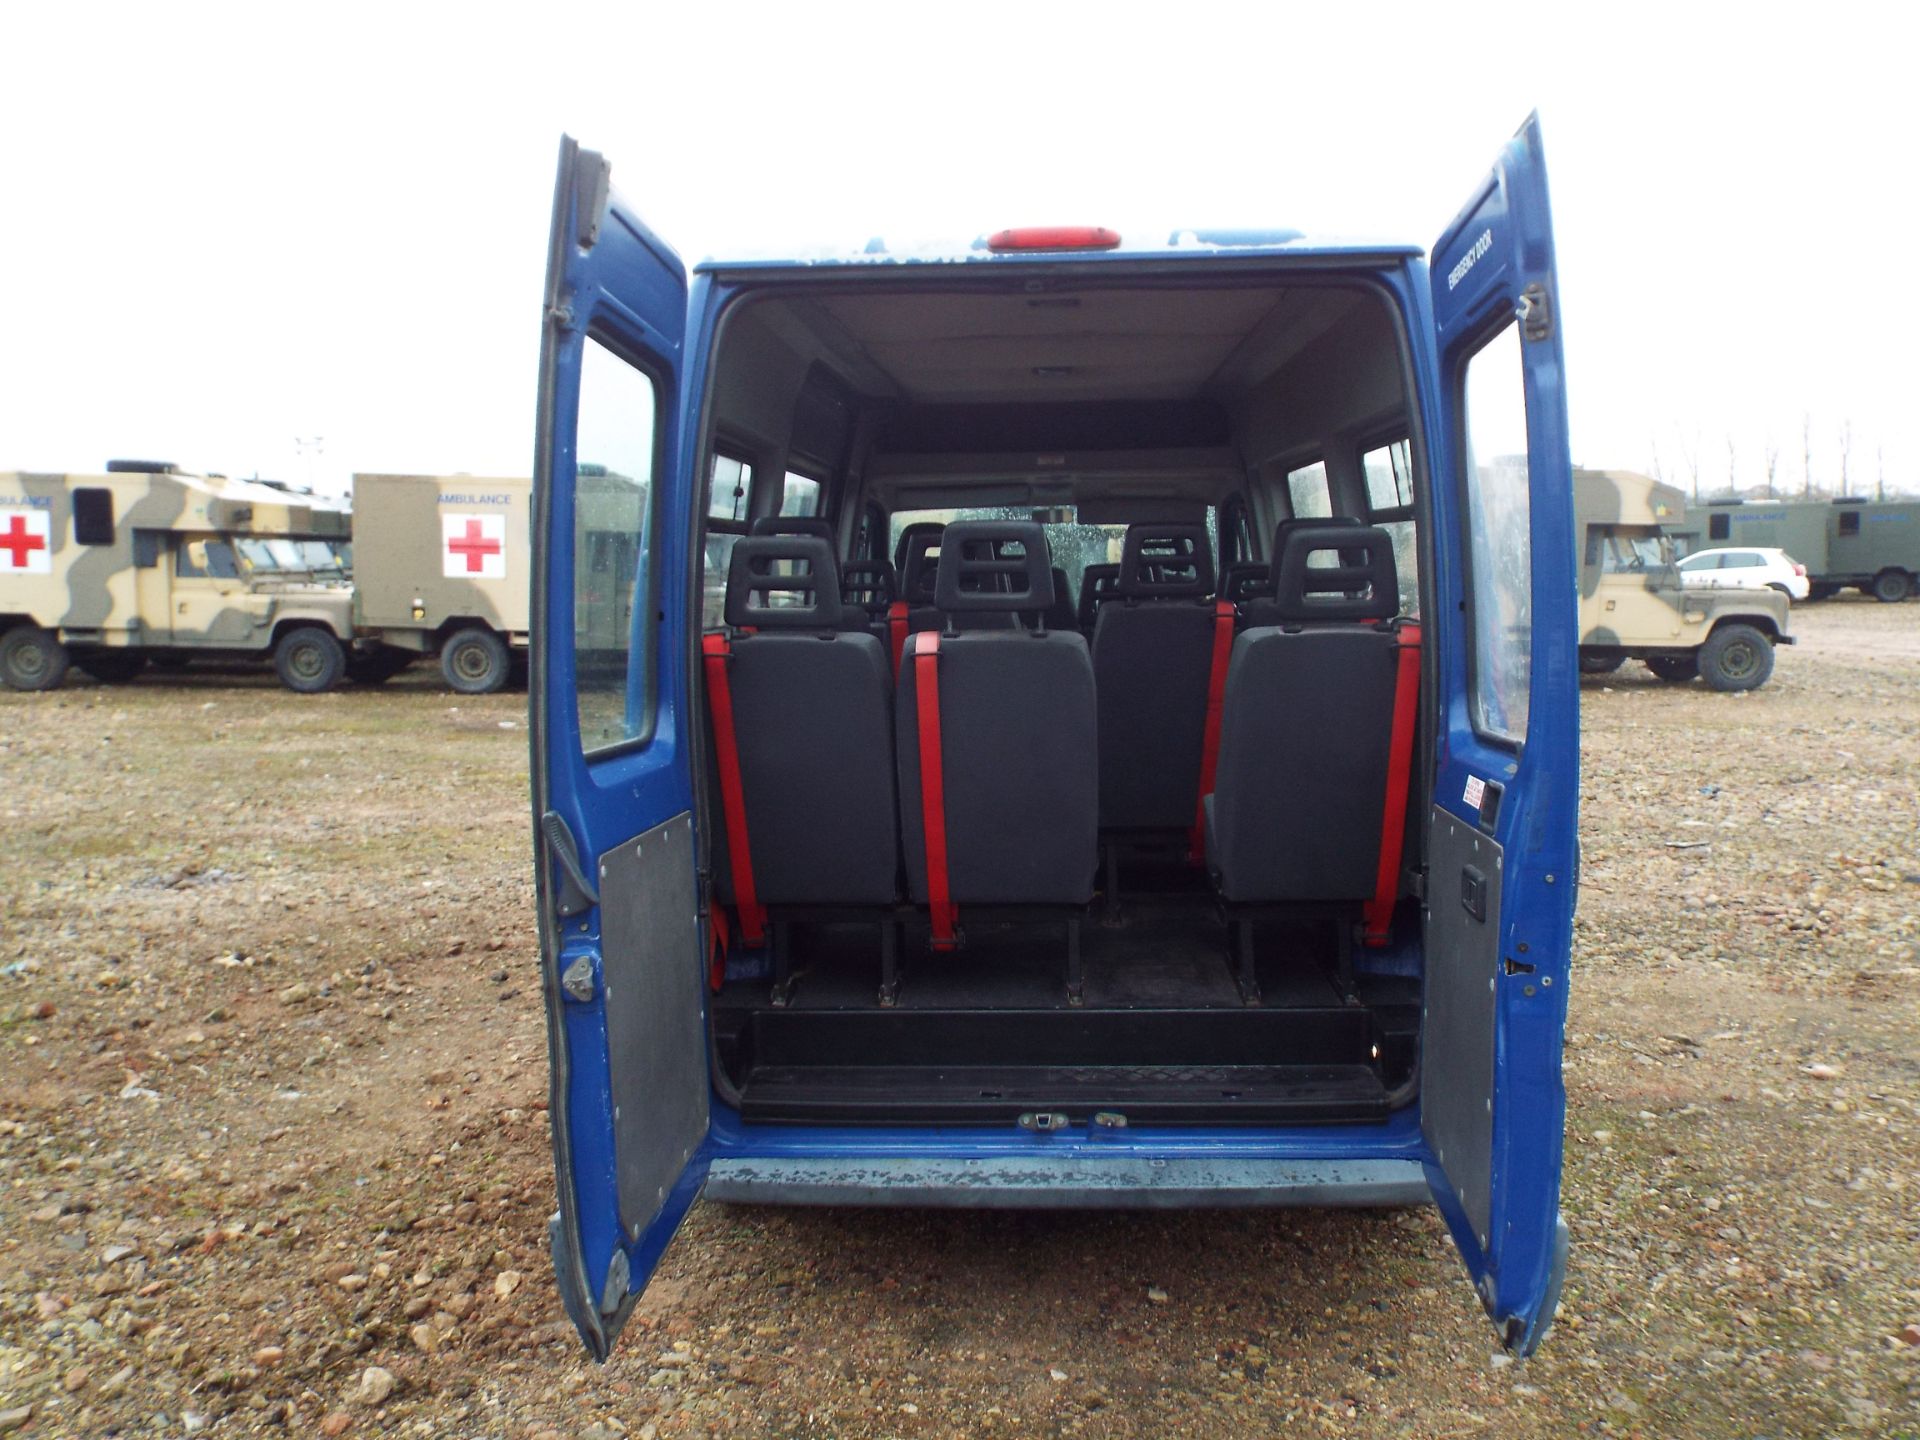 Citroen Relay 17 Seater Minibus - Image 15 of 17